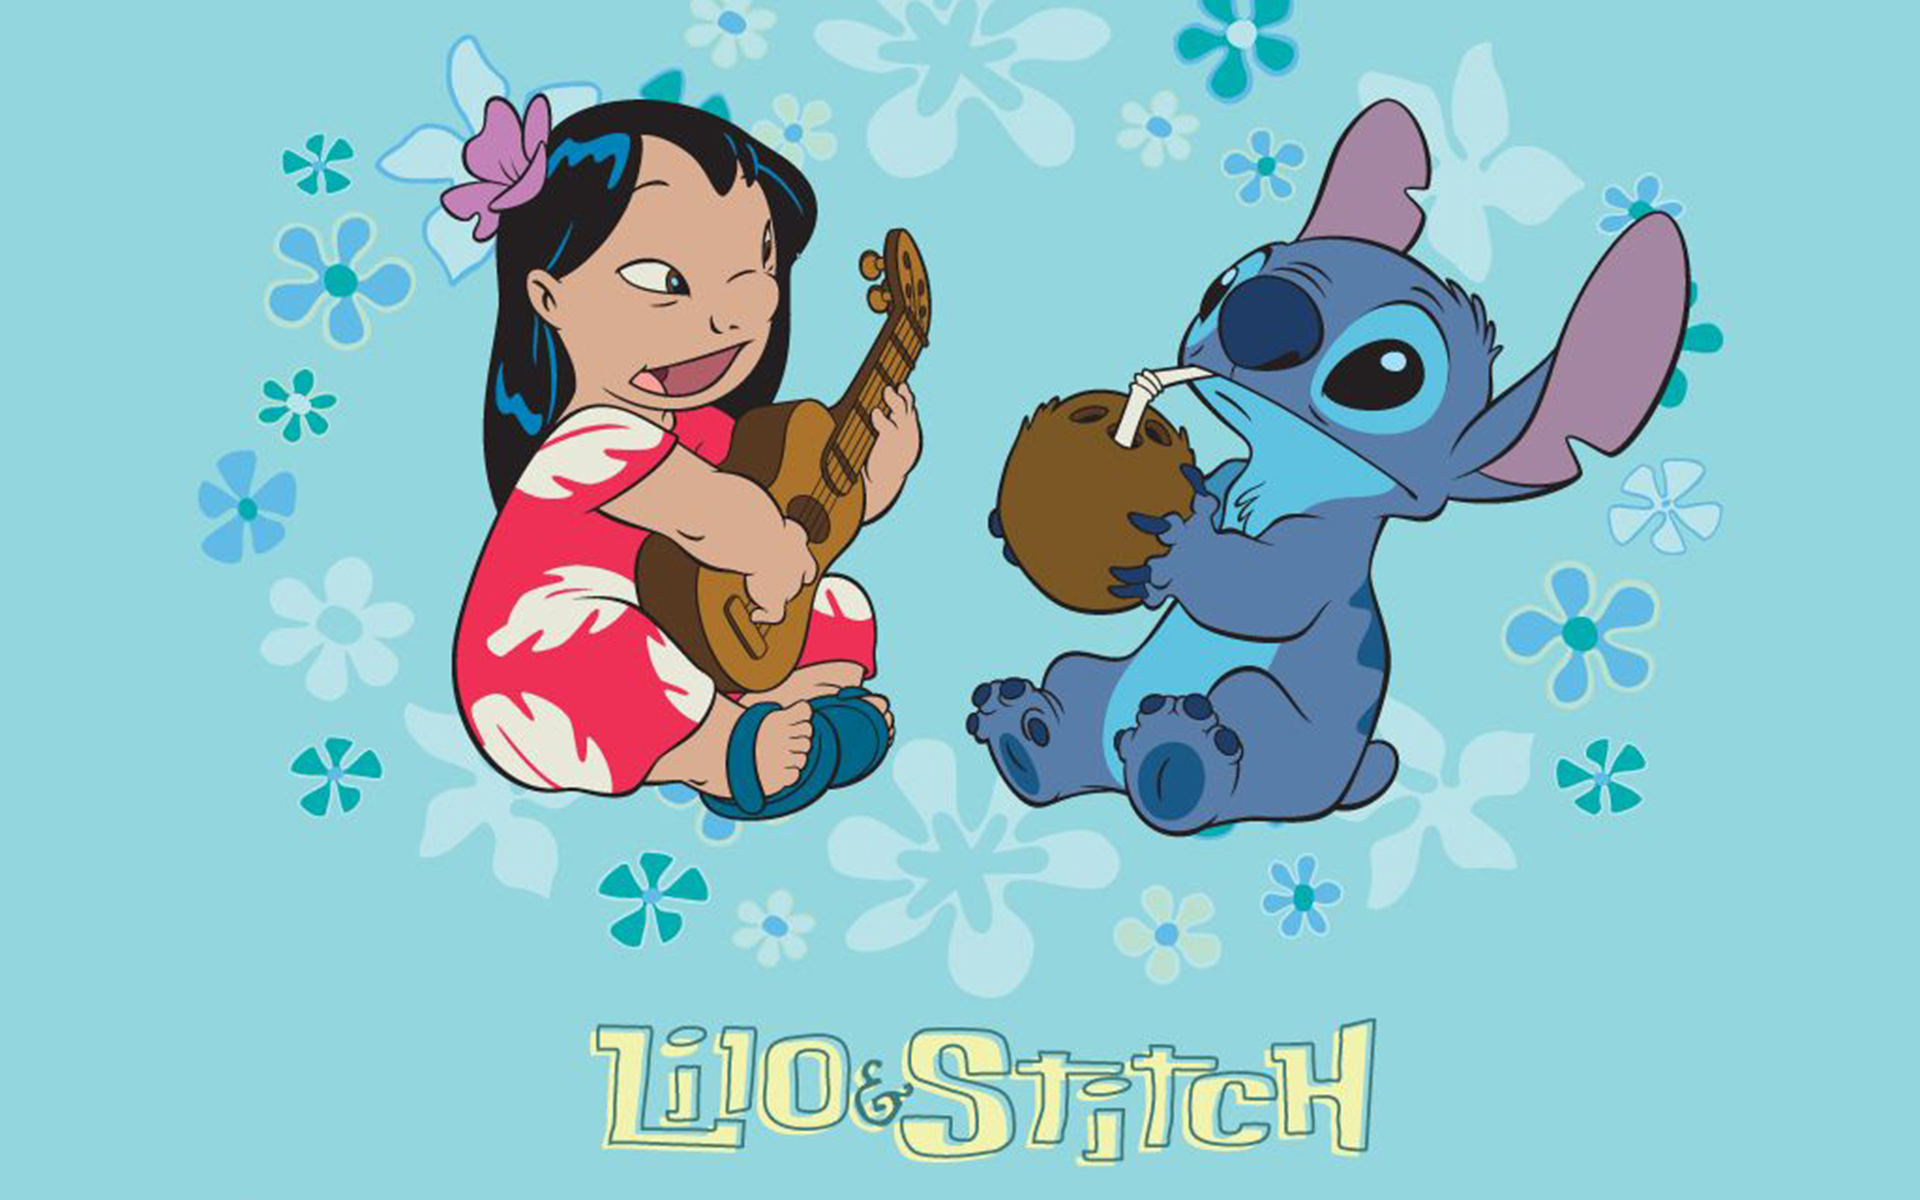 Bạn muốn tải hình nền Stitch dễ thương và dễ dàng? Chúng tôi cung cấp các tùy chọn tải về miễn phí, giúp bạn có được hình ảnh đáng yêu để làm hình nền. Chú Stitch sẽ giúp bạn thư giãn và cảm thấy đầy hạnh phúc!